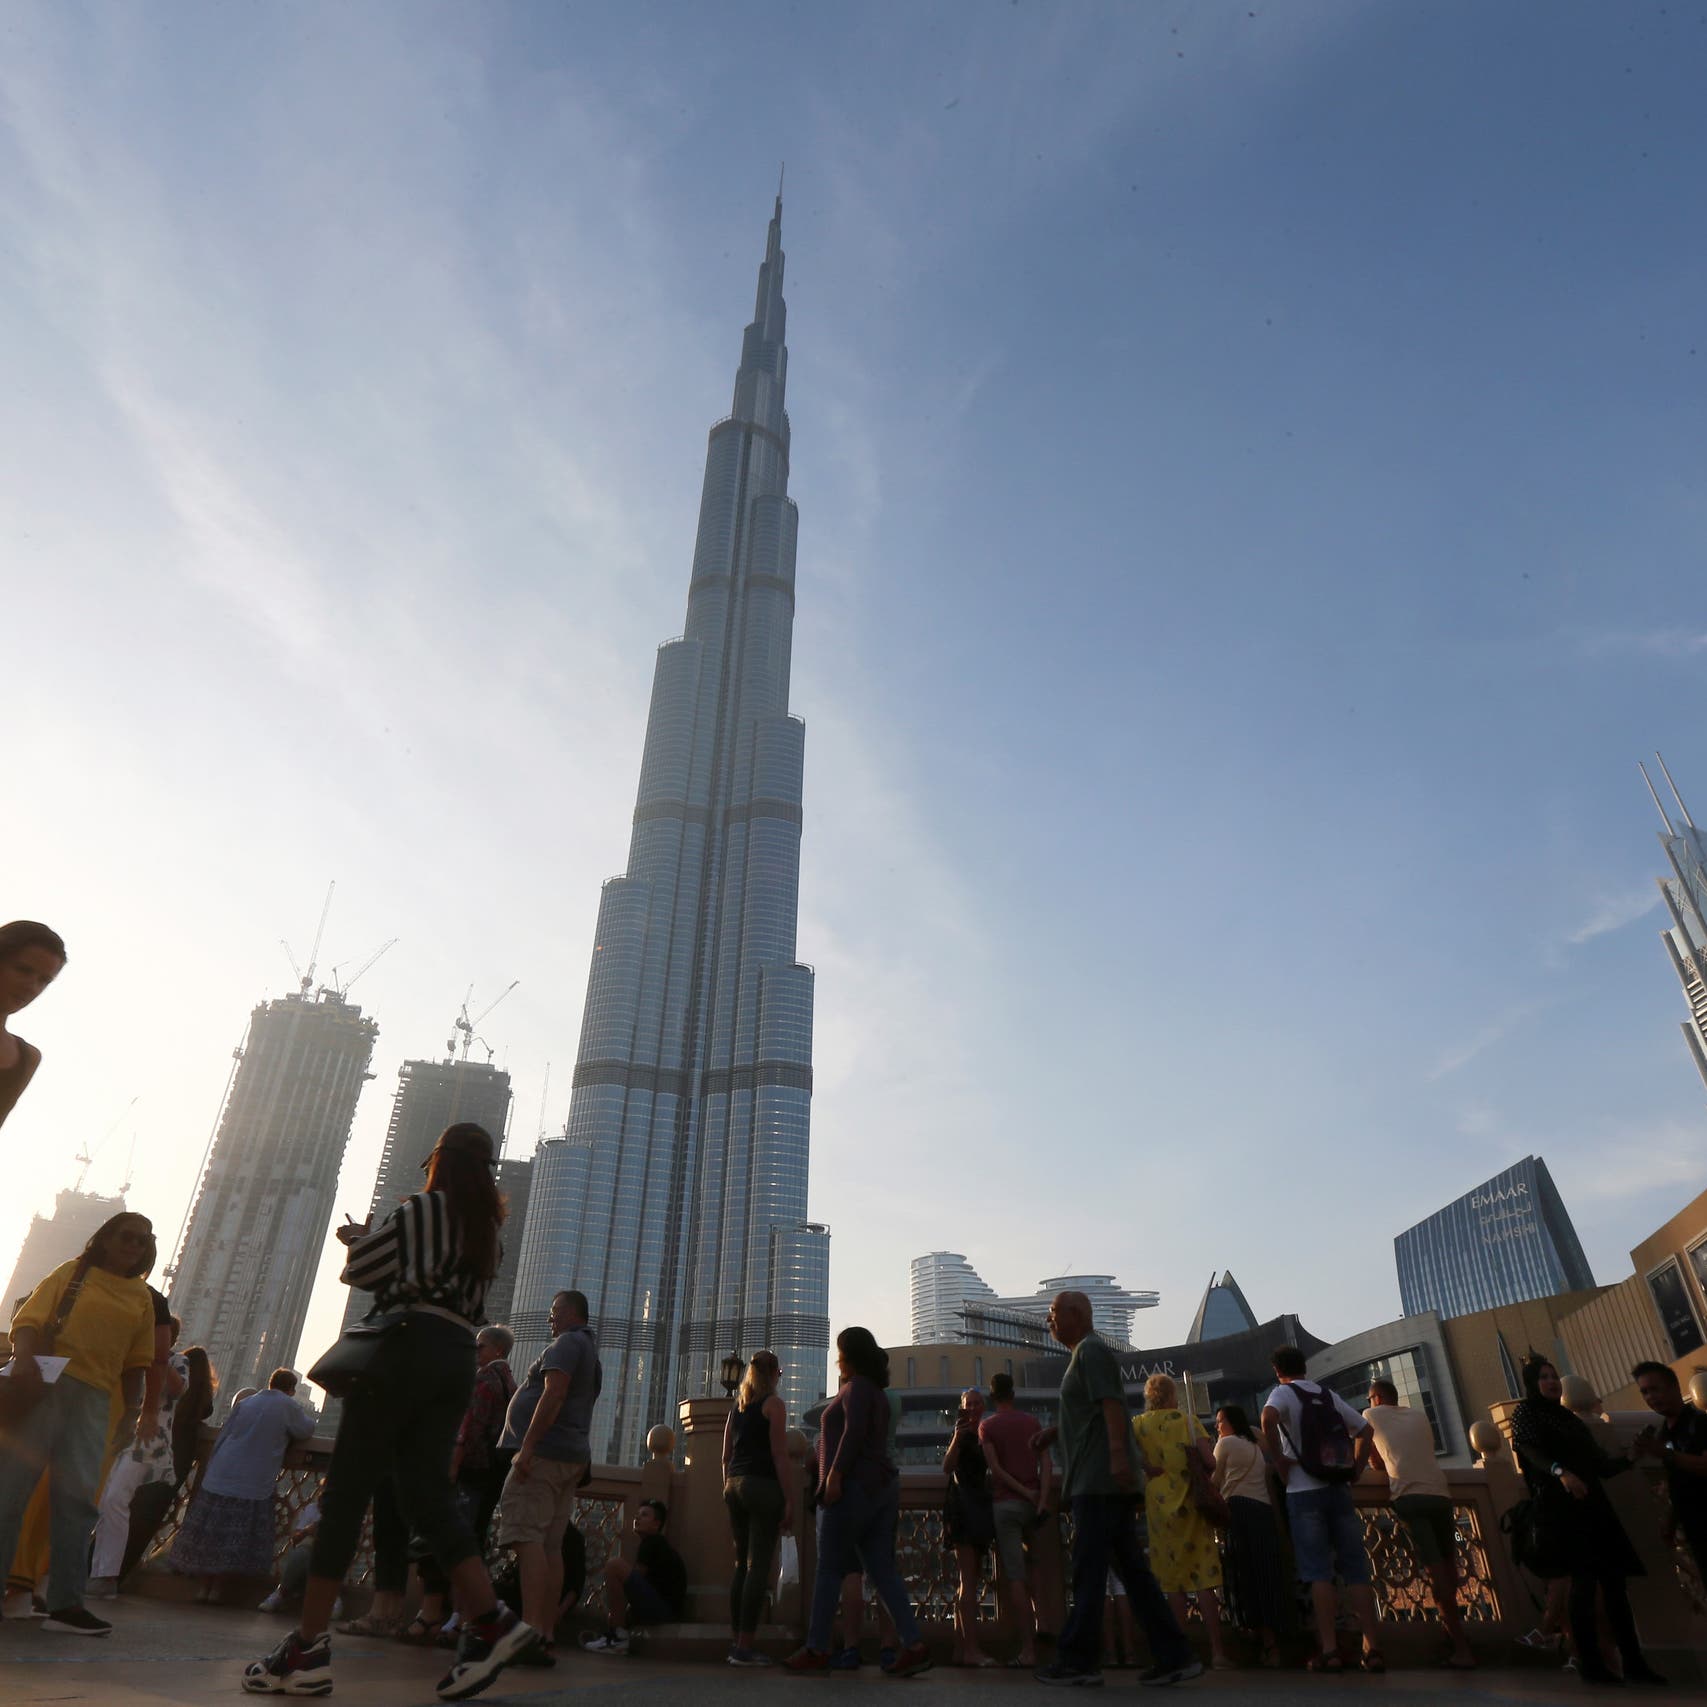 دبي تجمع 1.5 مليار دولار من طرح سندات خاصة خلال يومين